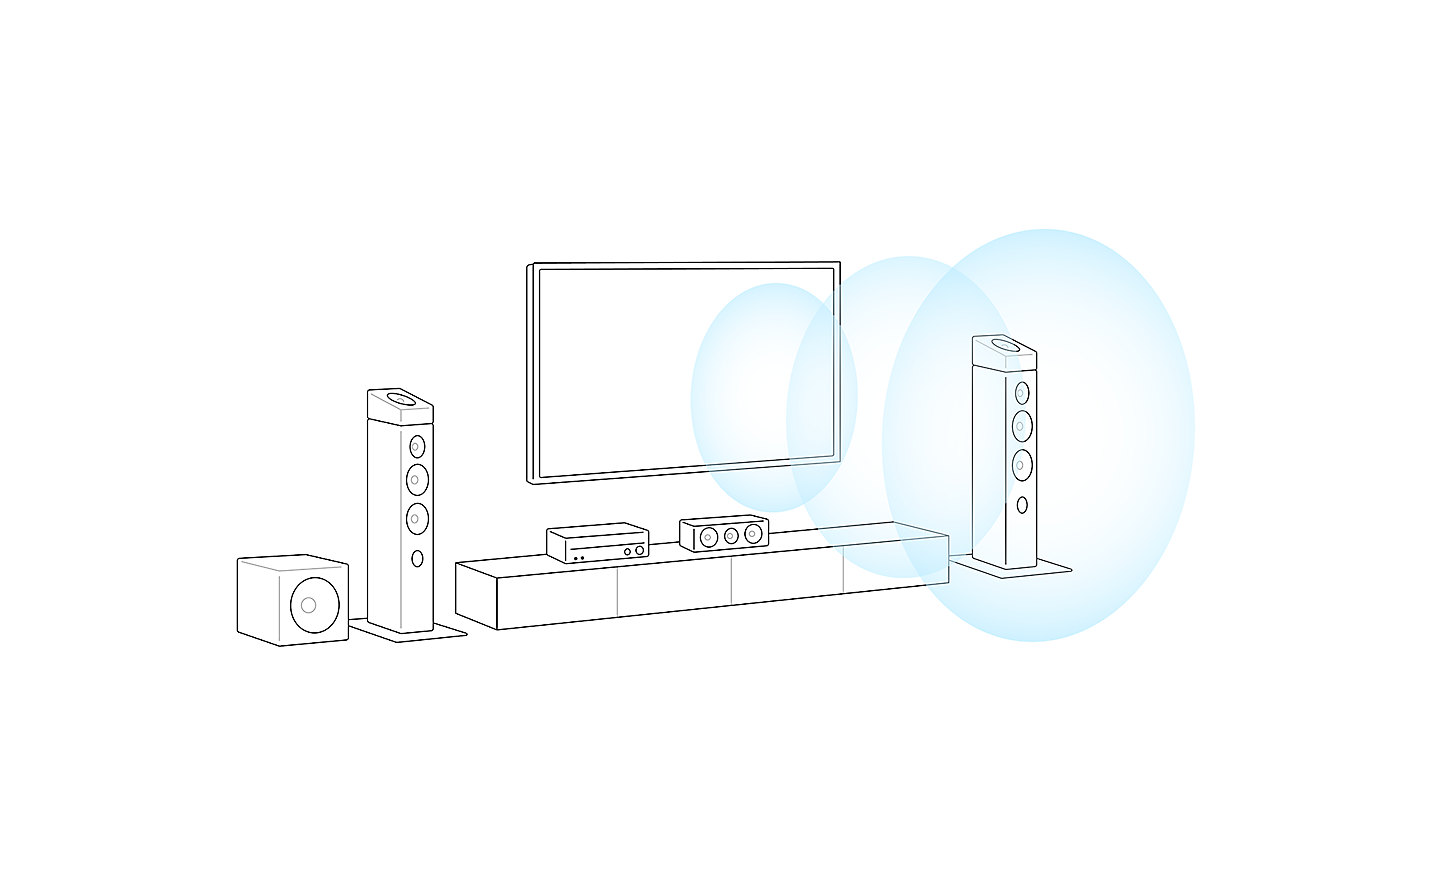 Alleen afbeelding van een tv-installatie weergeven. 3 blauwe cirkels komen uit het midden van de tv en geven de richting van het geluid weer